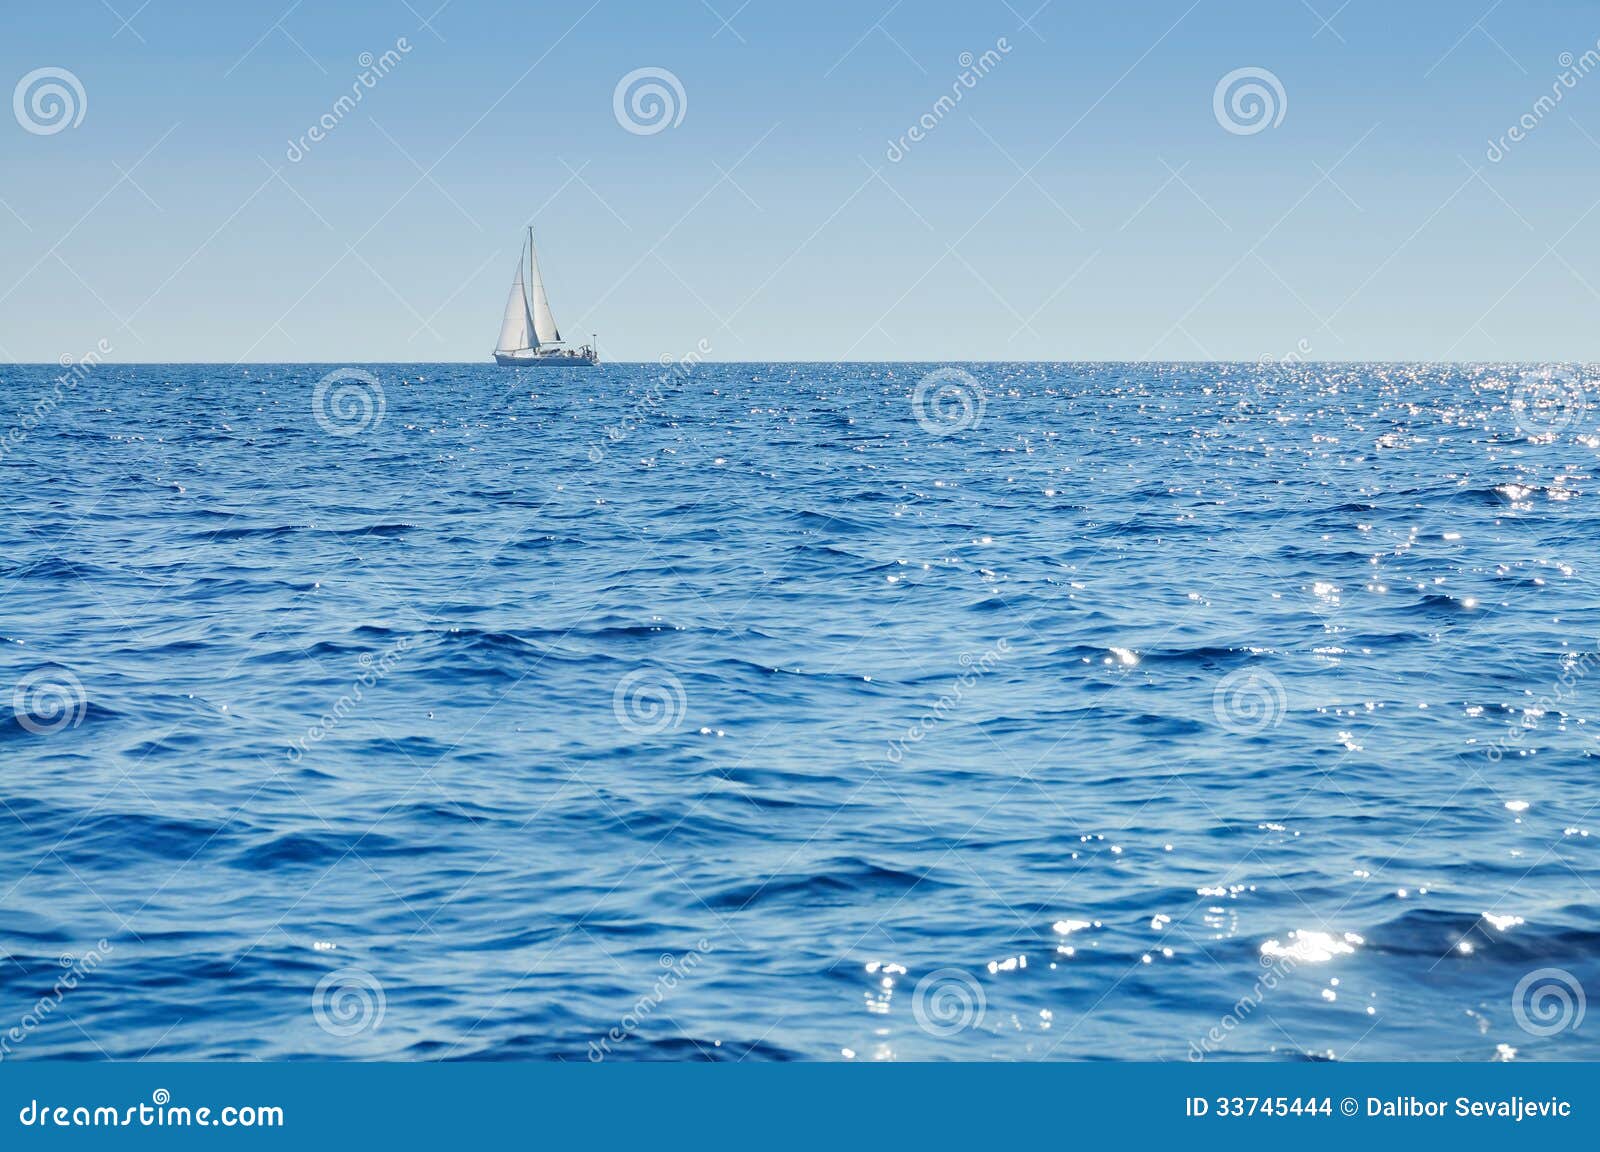 sailboat at horizon